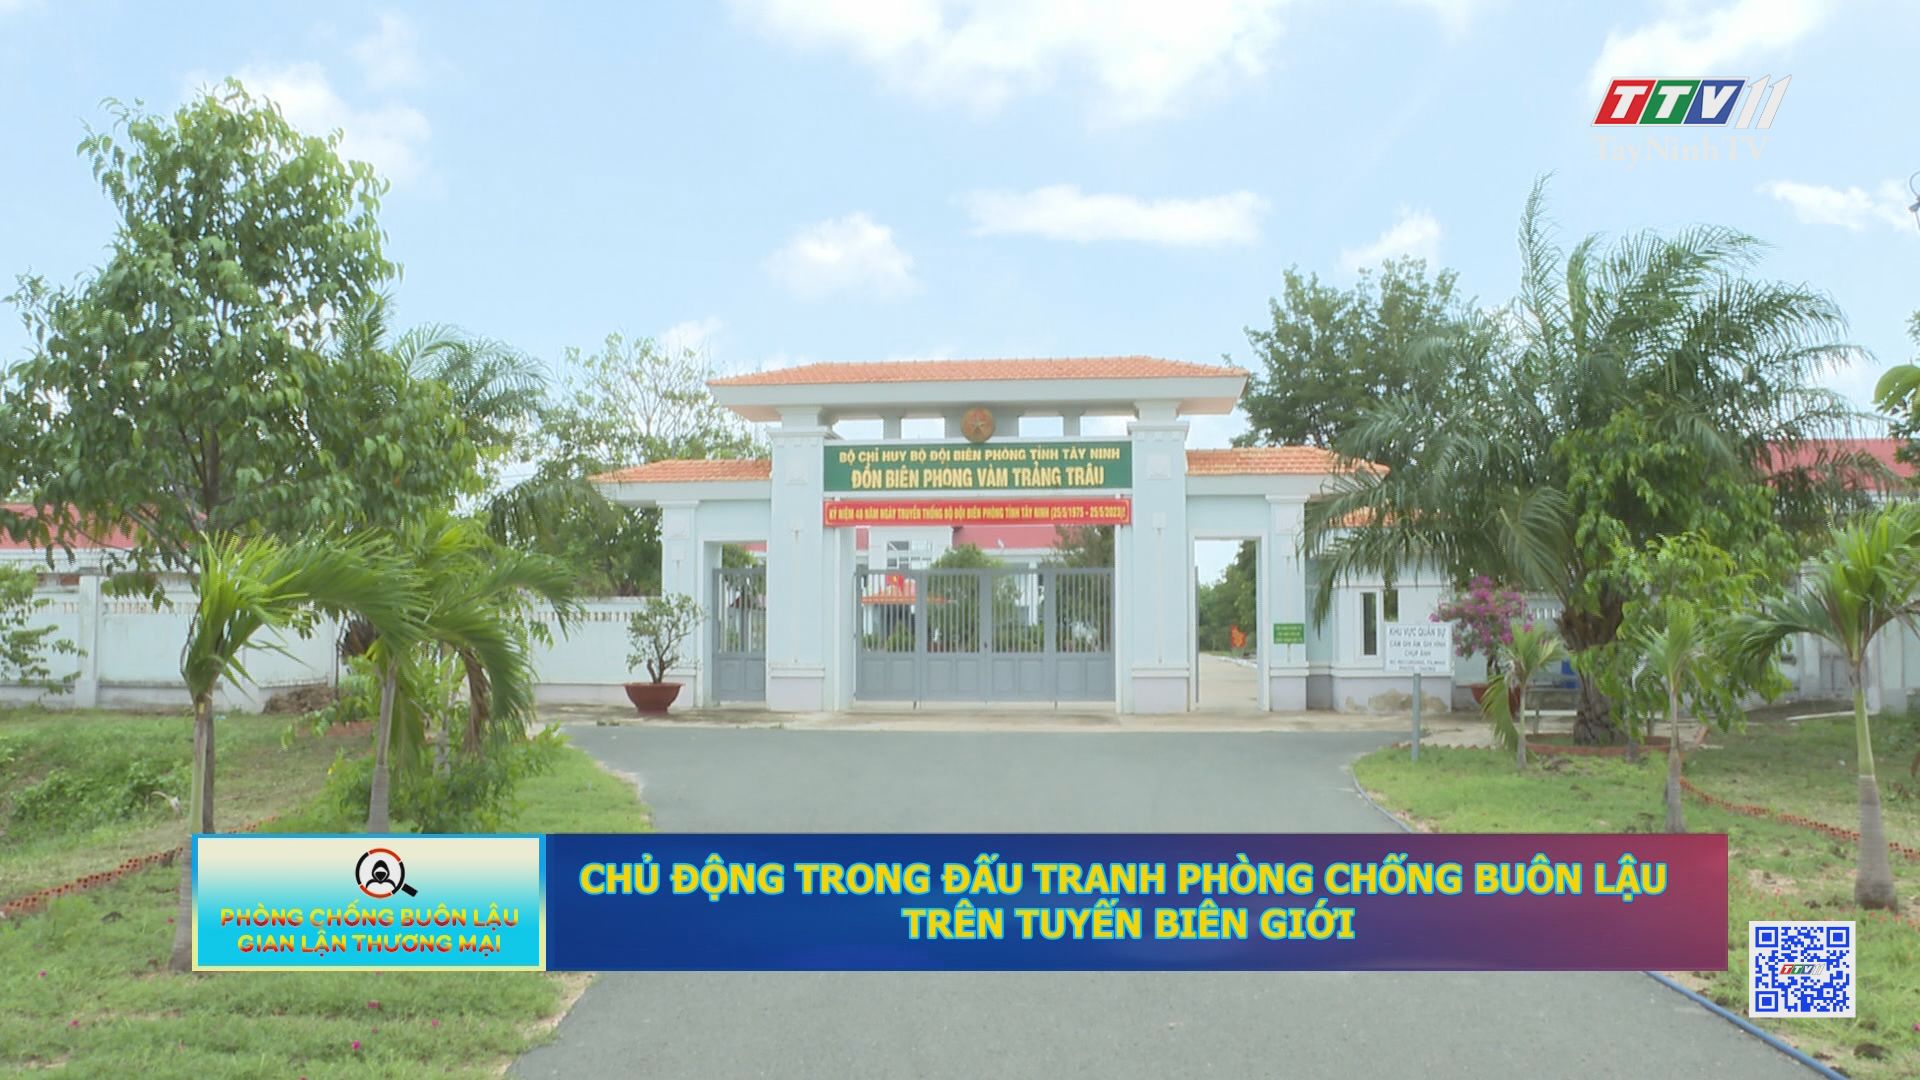 Chủ động trong đấu tranh phòng chống buôn lậu trên tuyến biên giới | Phòng chống buôn lậu và gian lận thương mại | TayNinhTV